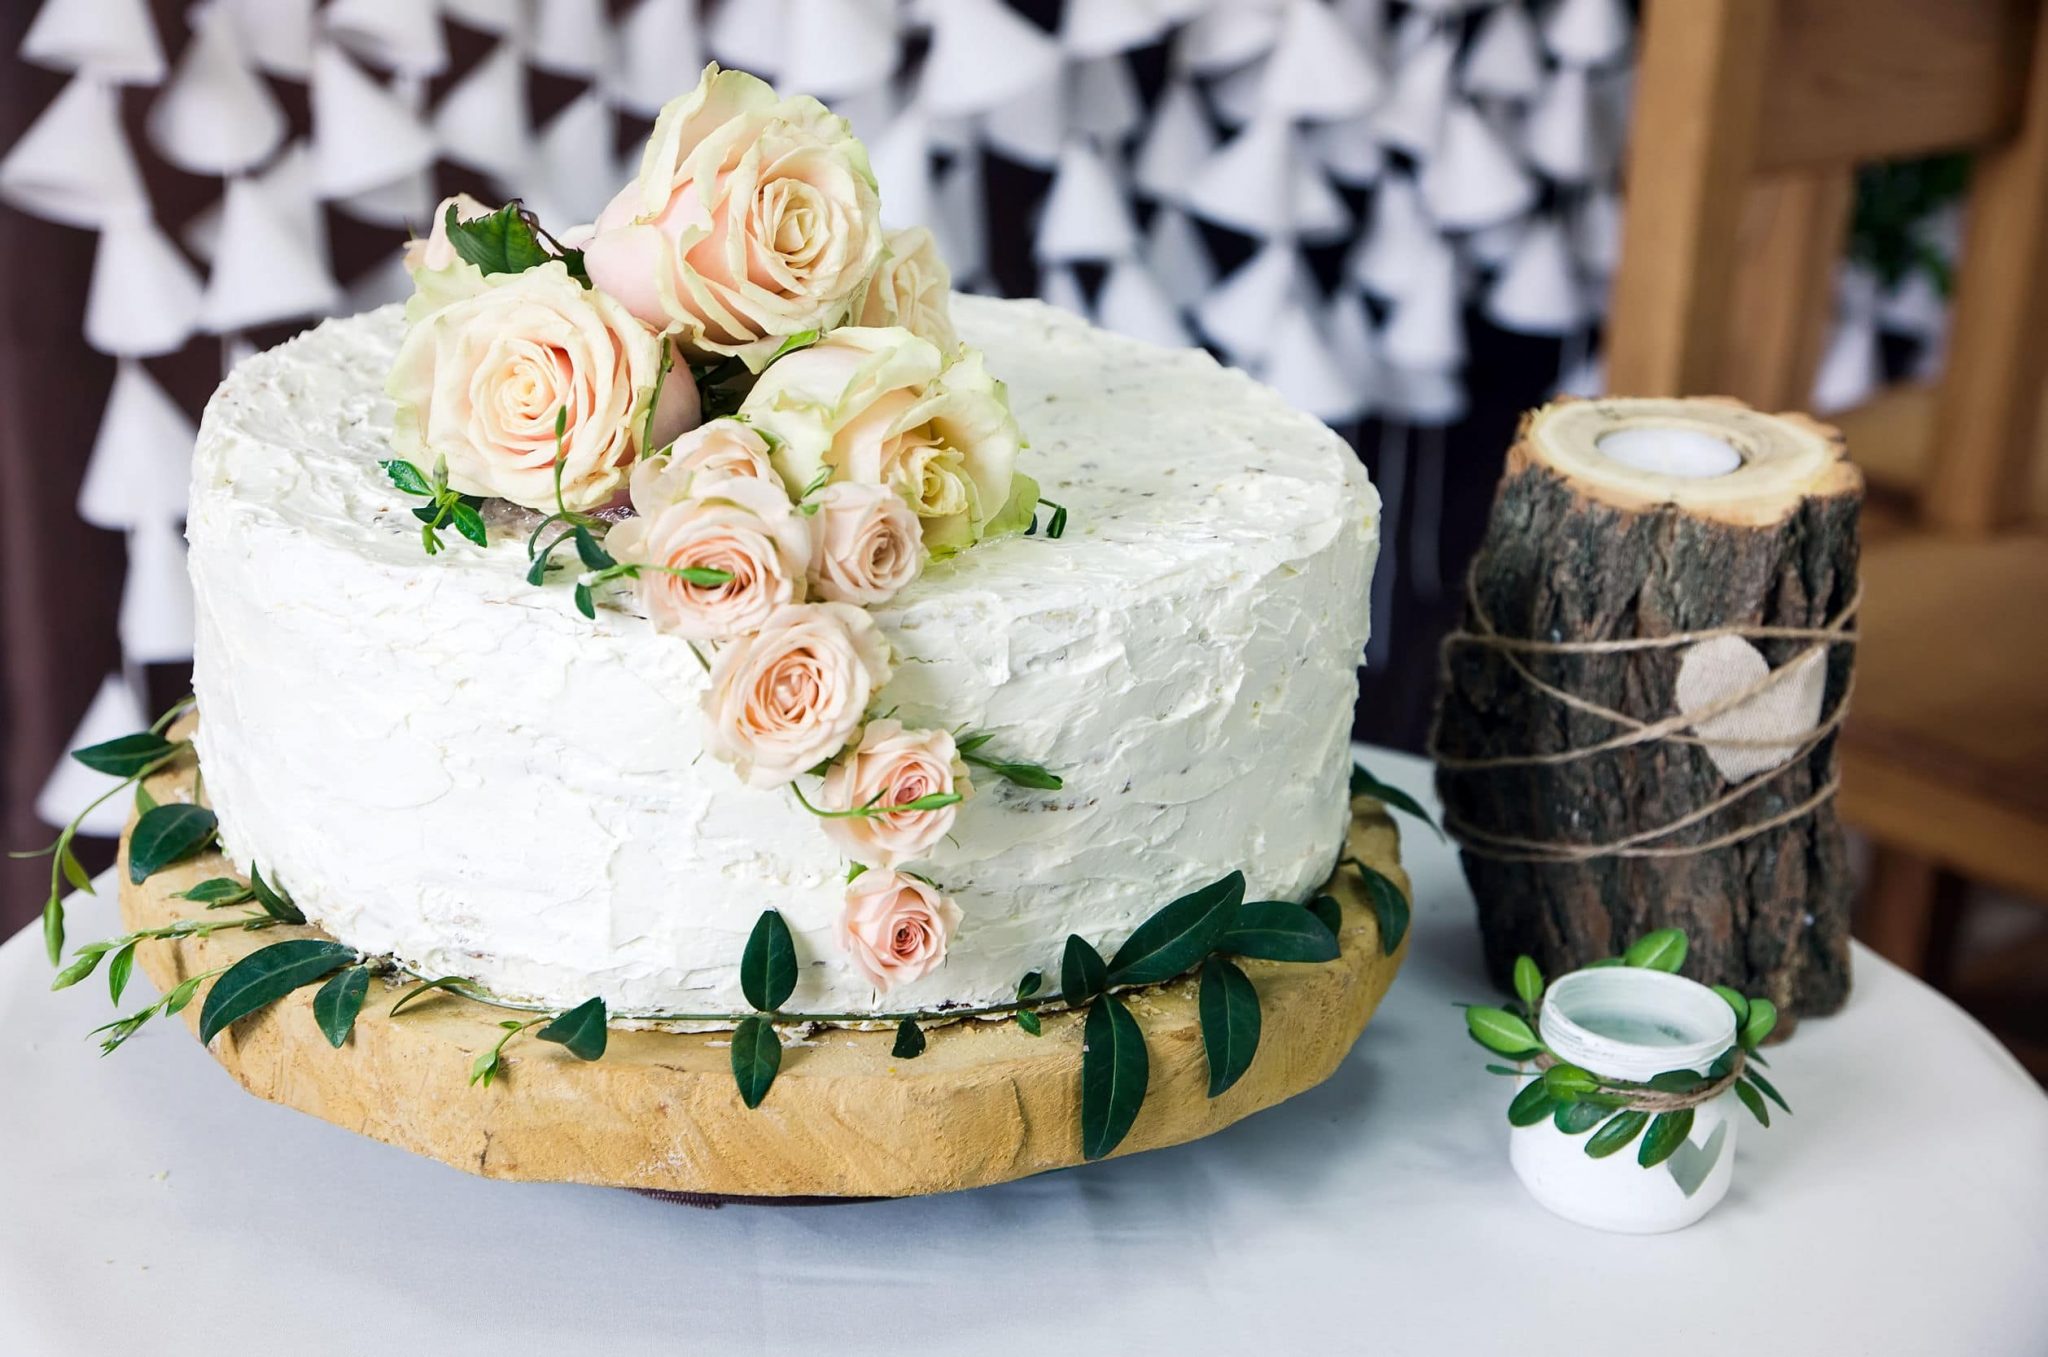 décoration du gâteau de mariage : du blanc et des roses